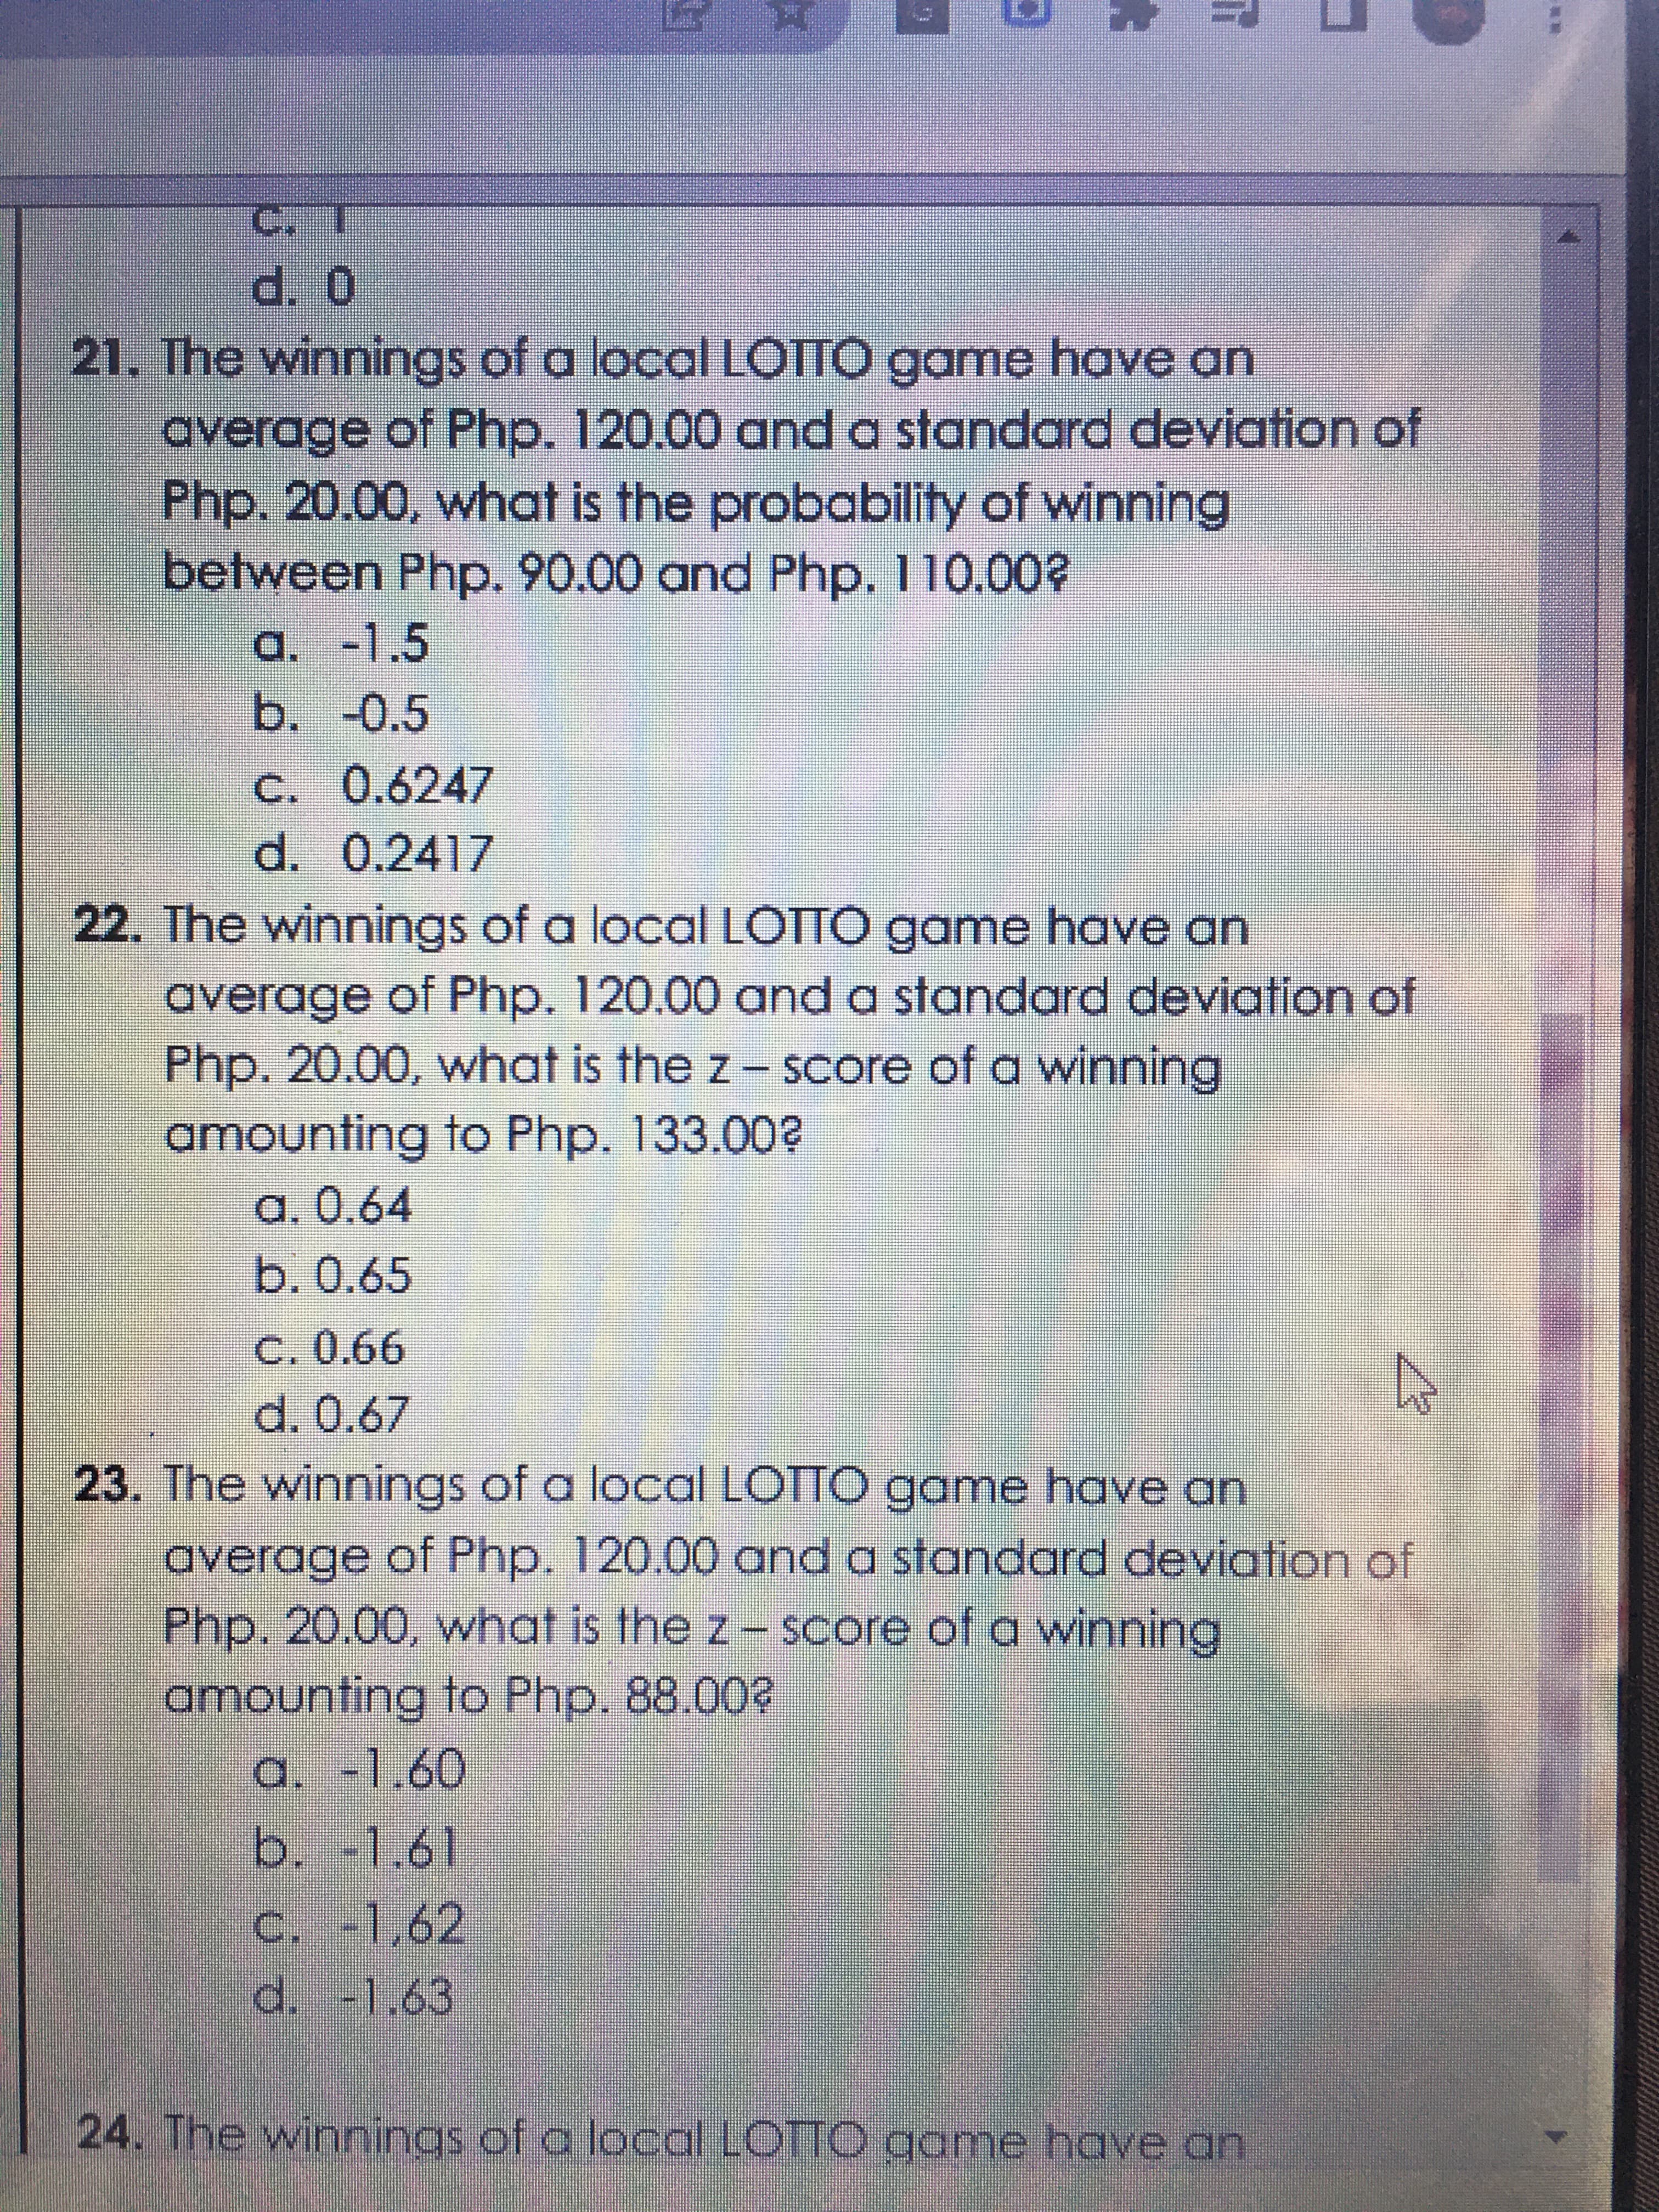 ட
21. The winnings of a local LOTTO game have an
average of Php. 120.00 and a standard deviation of
Php. 20.00, what is the probability of winning
between Php. 90.00 and Php. 110.00?
a. -1.5
b.-0.5
C. 0.6247
d. 0.2417
22. The winnings of a local LOTTO game have an
average of Php. 120.00 and a standard deviation of
Php. 20.00, what is the z- Score of a winning
amounting to Php. 133.00?
a. 0.64
b.0.65
C. 0.66
23. The winnings of a local LOTTO game have an
average of Php. 120.00 oand a standard deviation of
Php.20.00, what is the z- Score of a winning
amounting to Php. 88.00?
a. -1.60
b.-1.61
C. -1,62
d. -1.63
24. The winnings of a local LOTTO game have an
